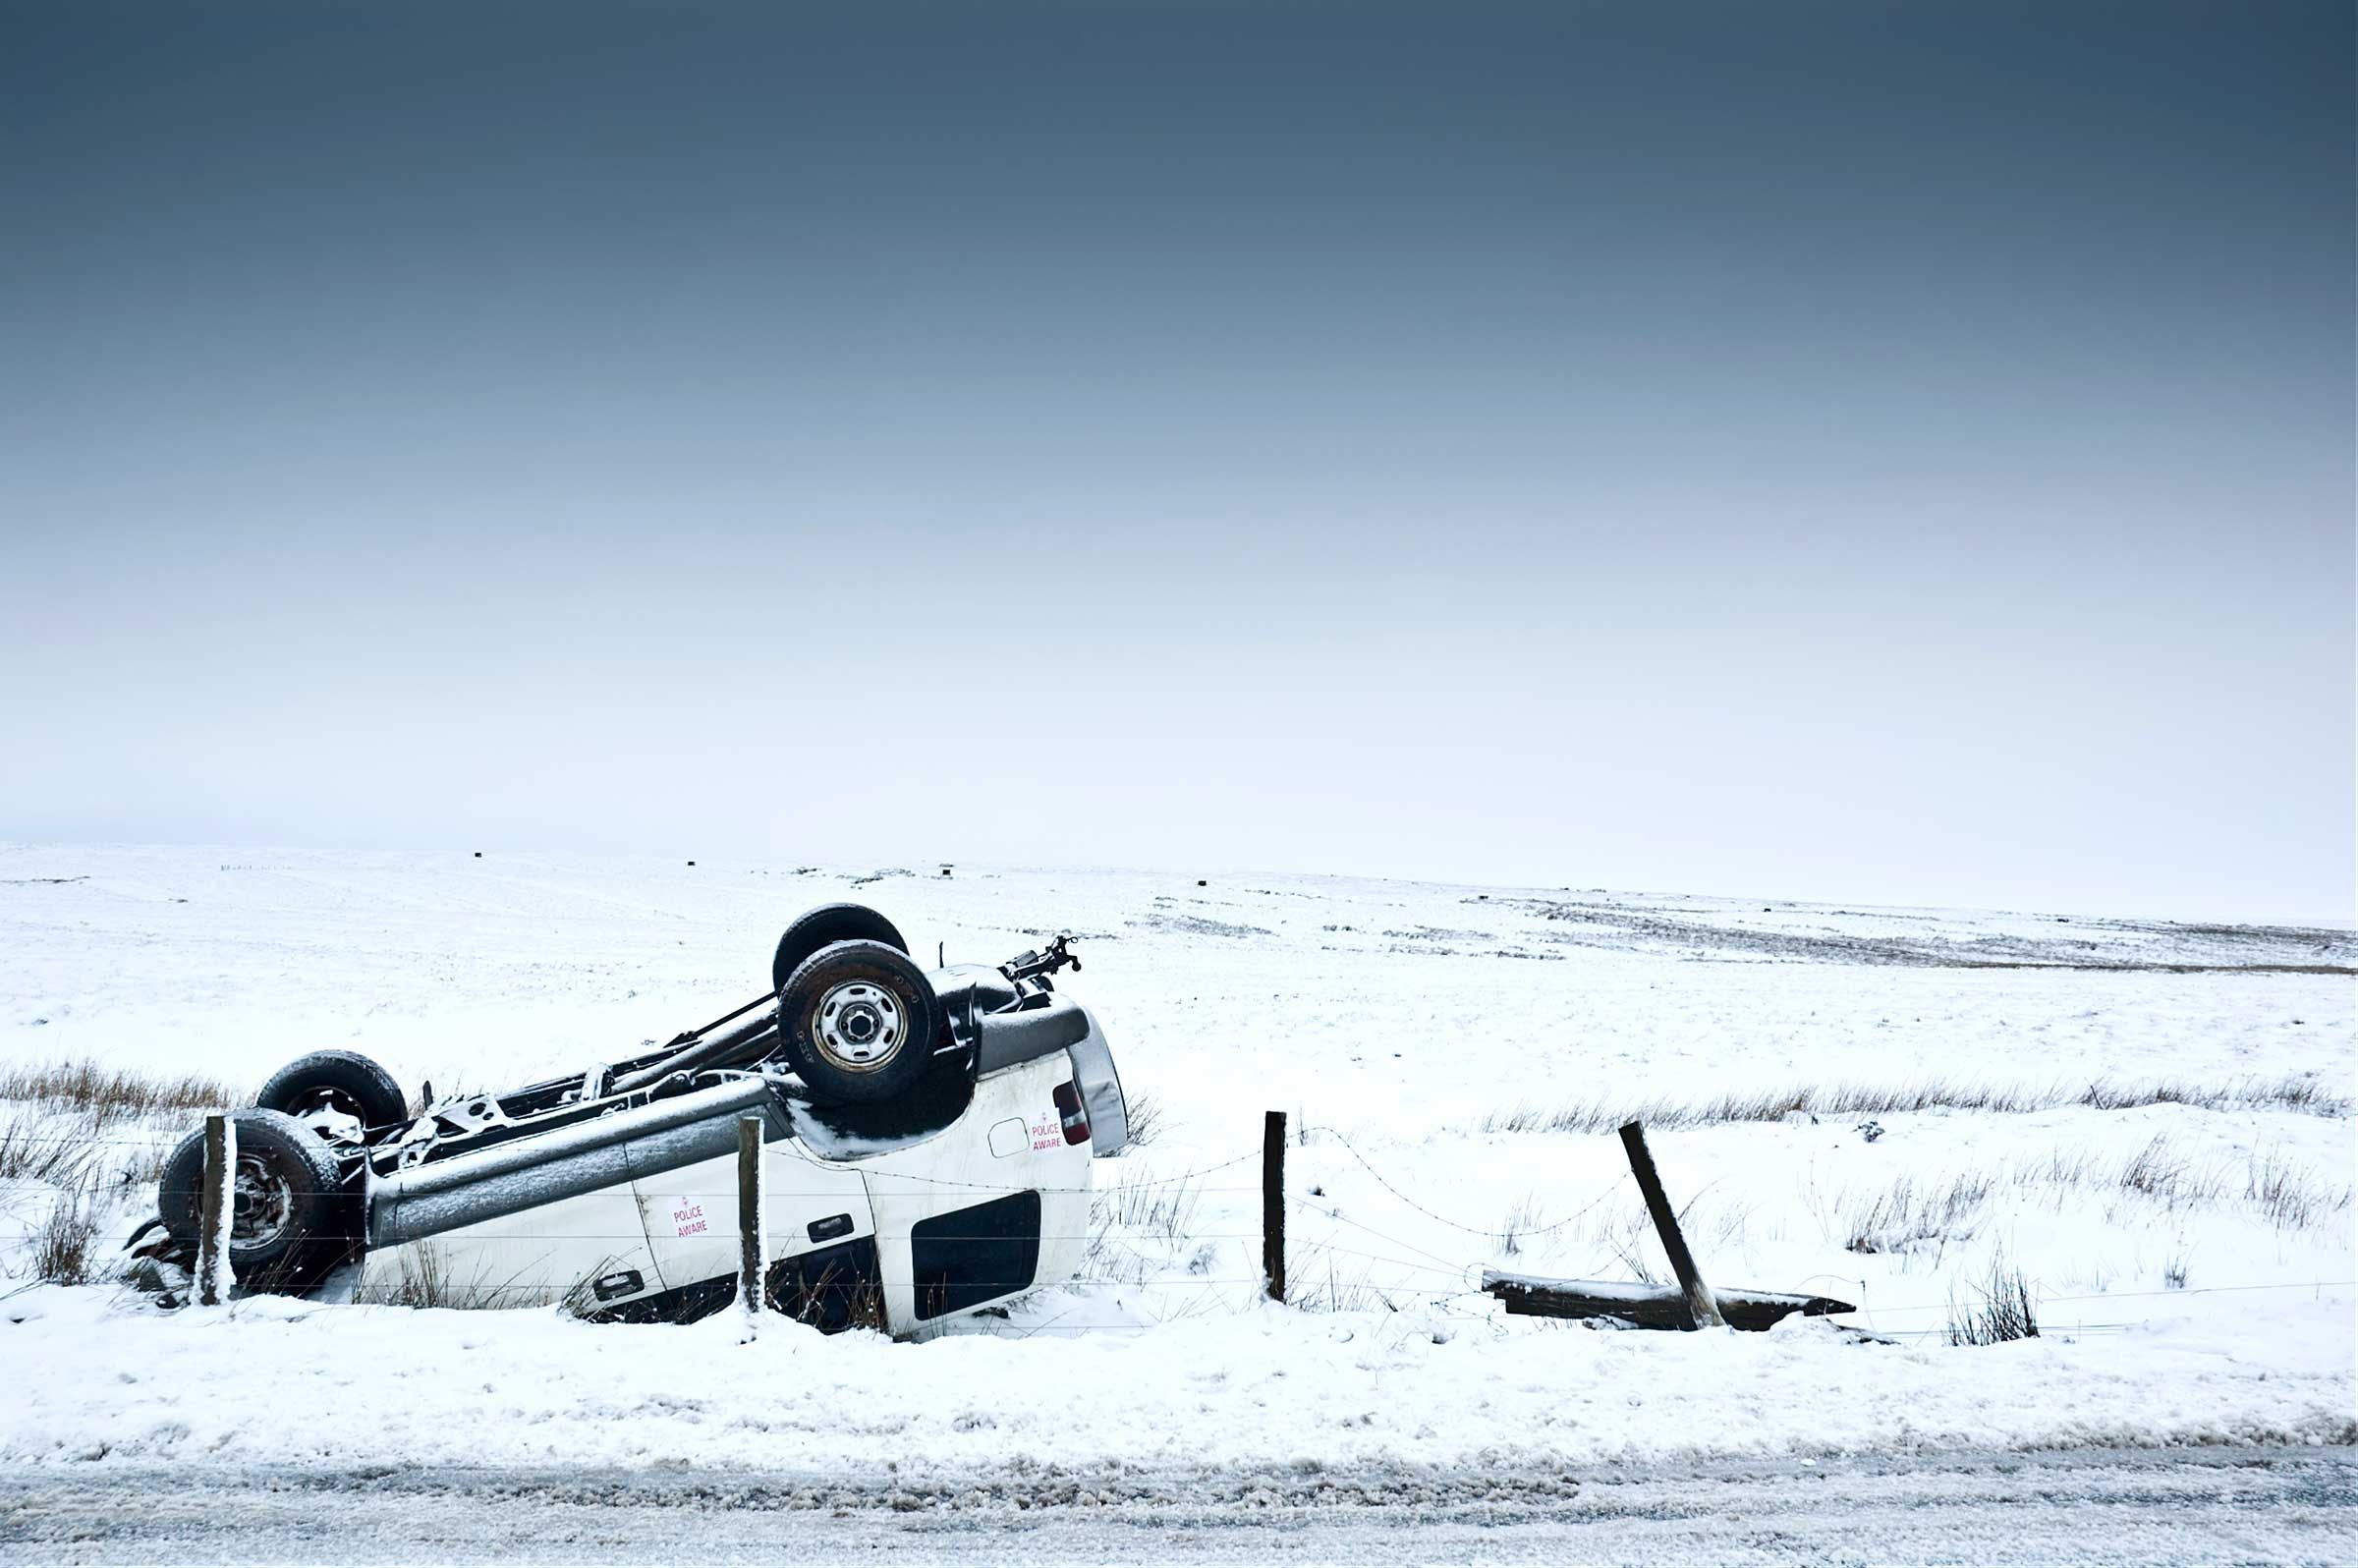 Klaim Asuransi Mobil:15 Alasan Paling Aneh yang Pernah Diajukan 